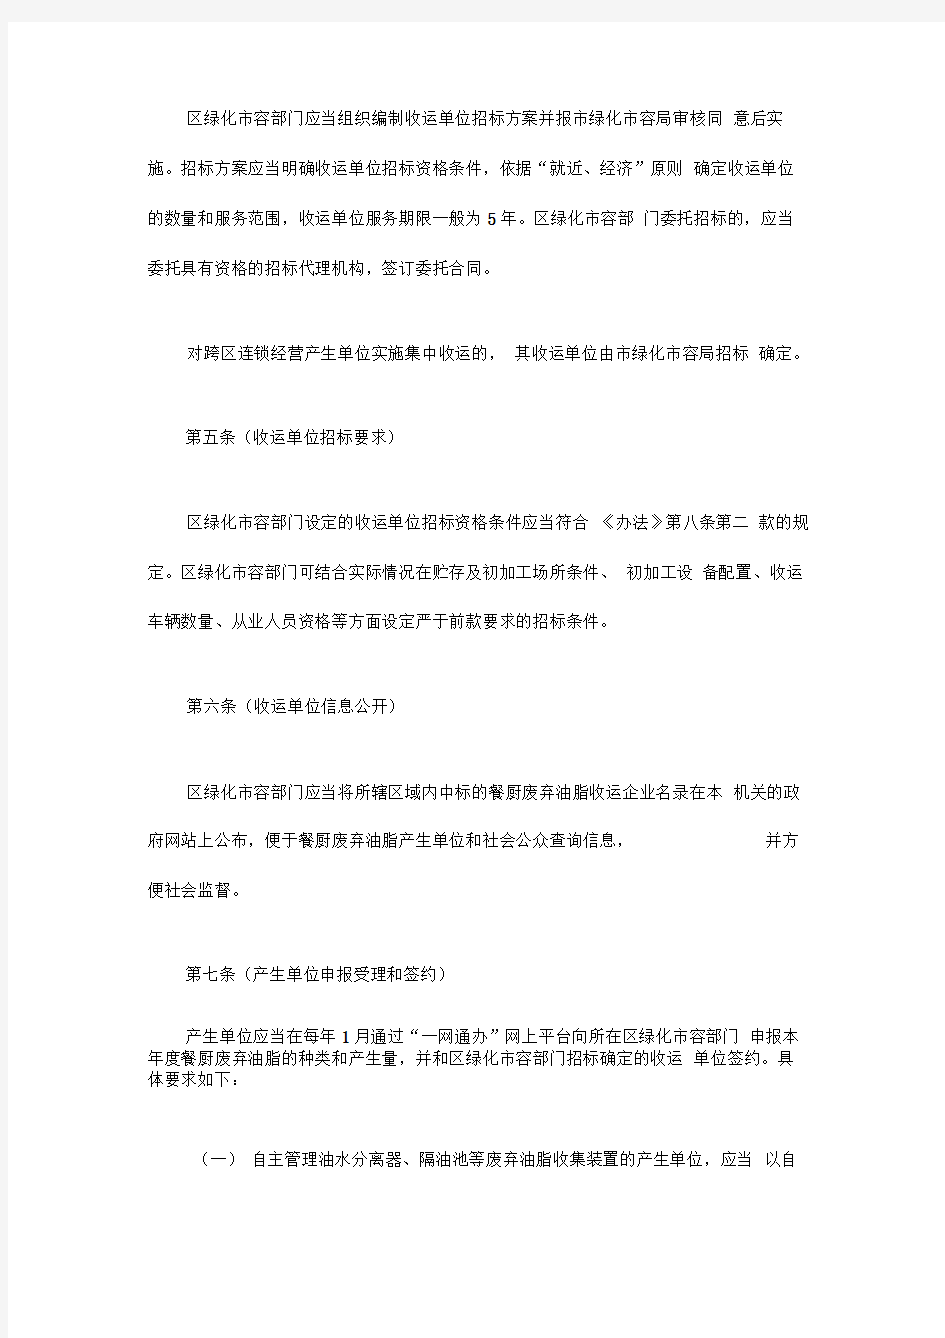 《上海市餐厨废弃油脂处理管理办法》实施若干规定